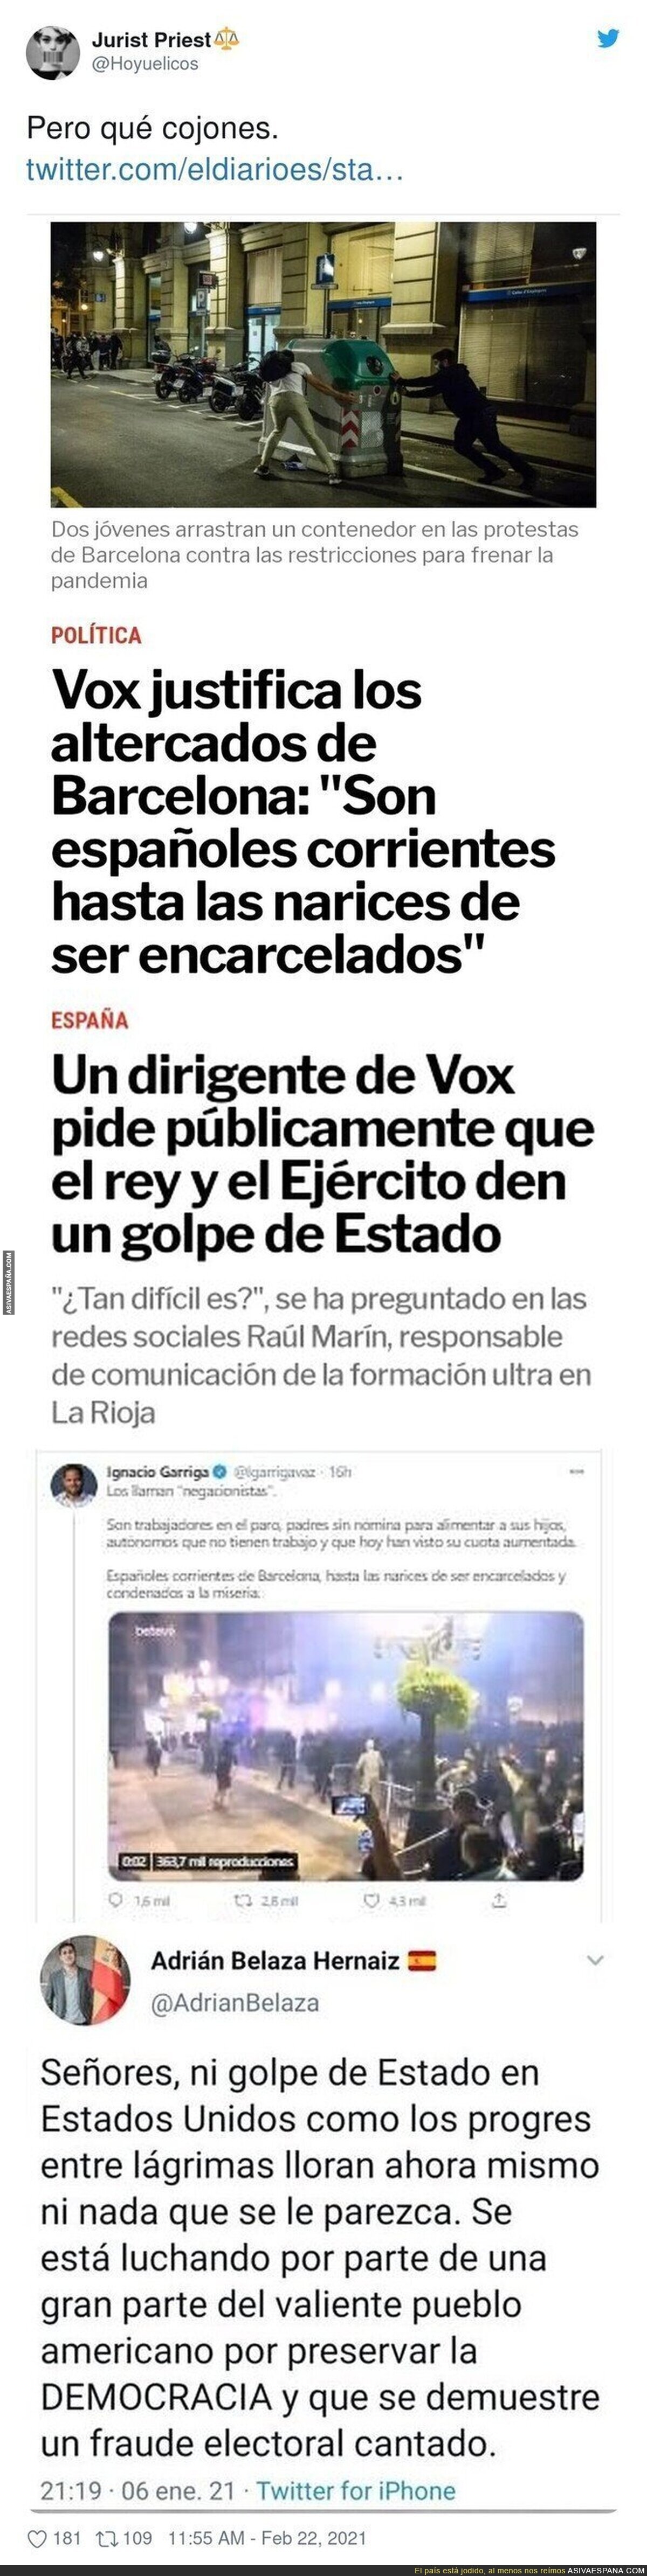 Los altercados de Barcelona apoyados por VOX